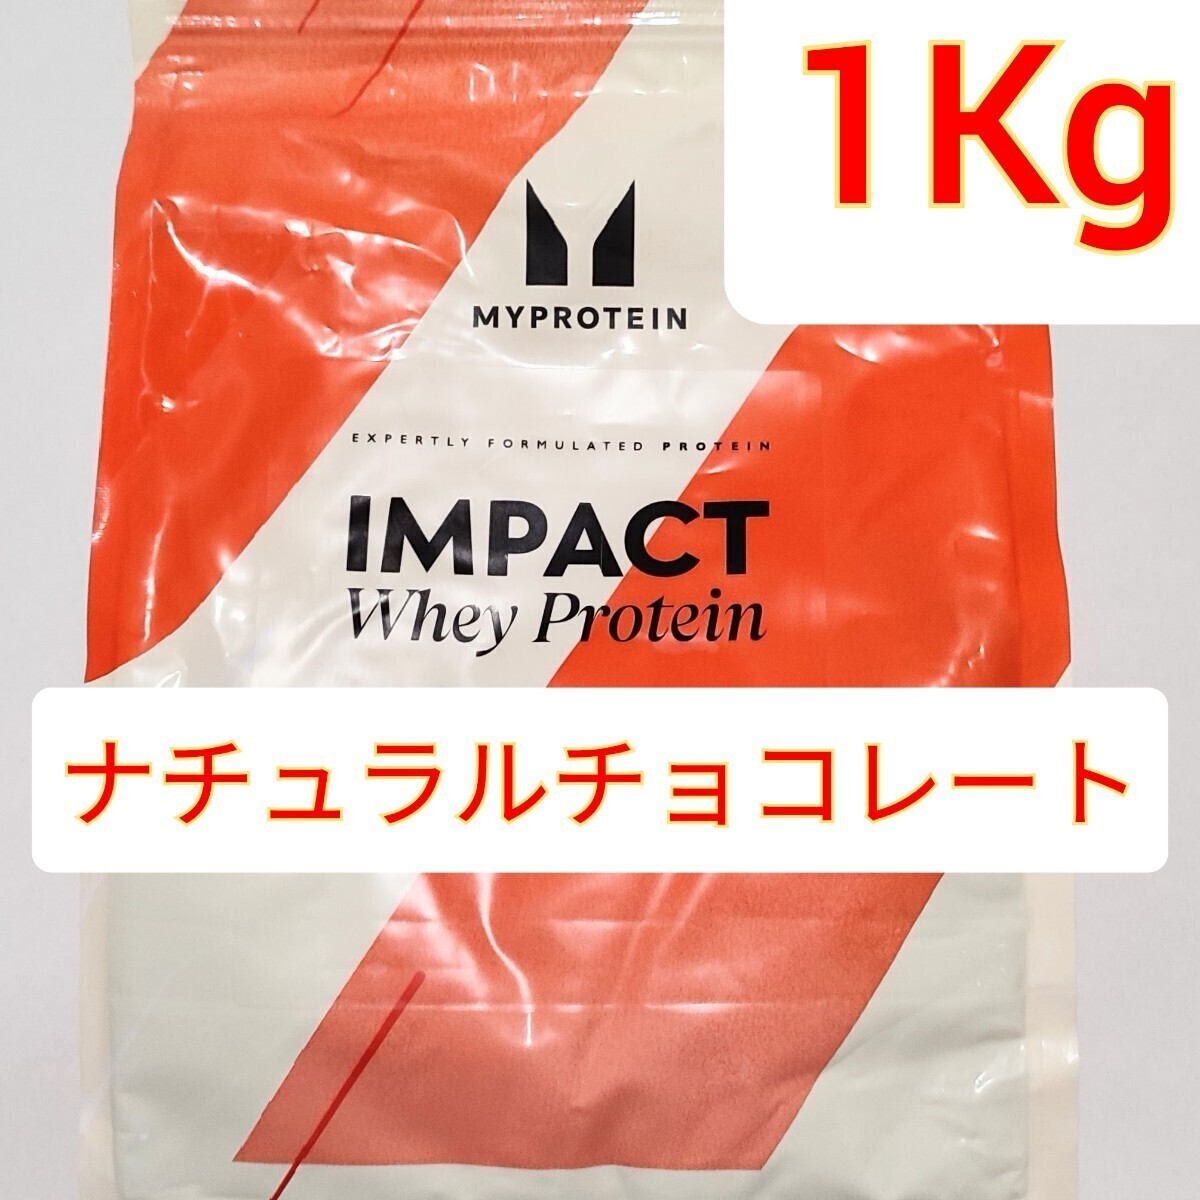 MYPROTEIN IMPACT WHEY PROTEIN my protein impact whey protein natural chocolate 1Kg 1 kilo 